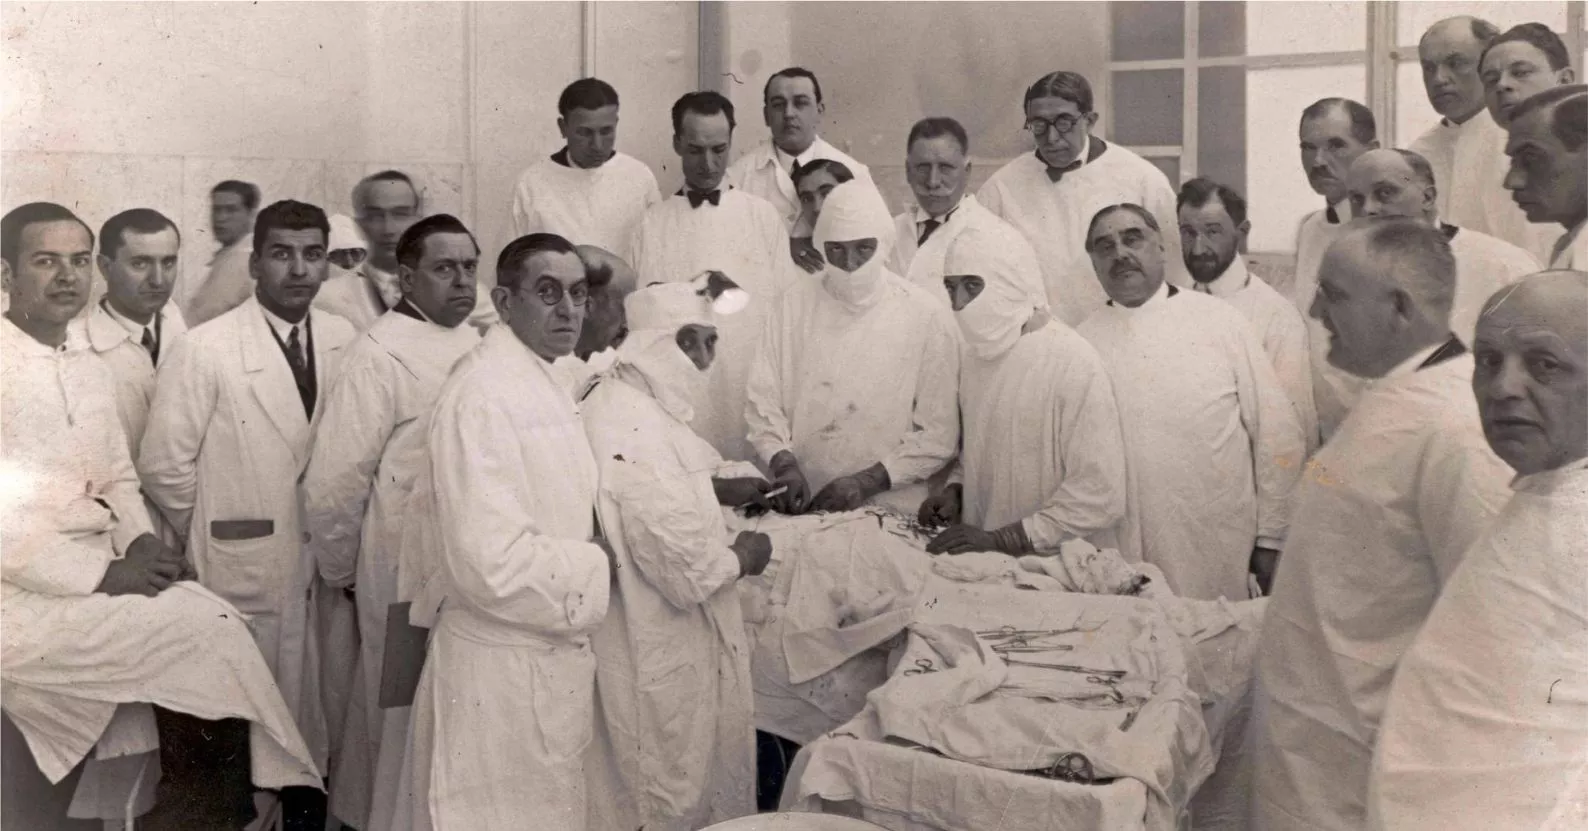 Els doctors Josep Trueta i Manuel Corachan practiquen un procediment quirúrgic davant la mirada d’altres col·legues en una fotografia de la dècada del 1930